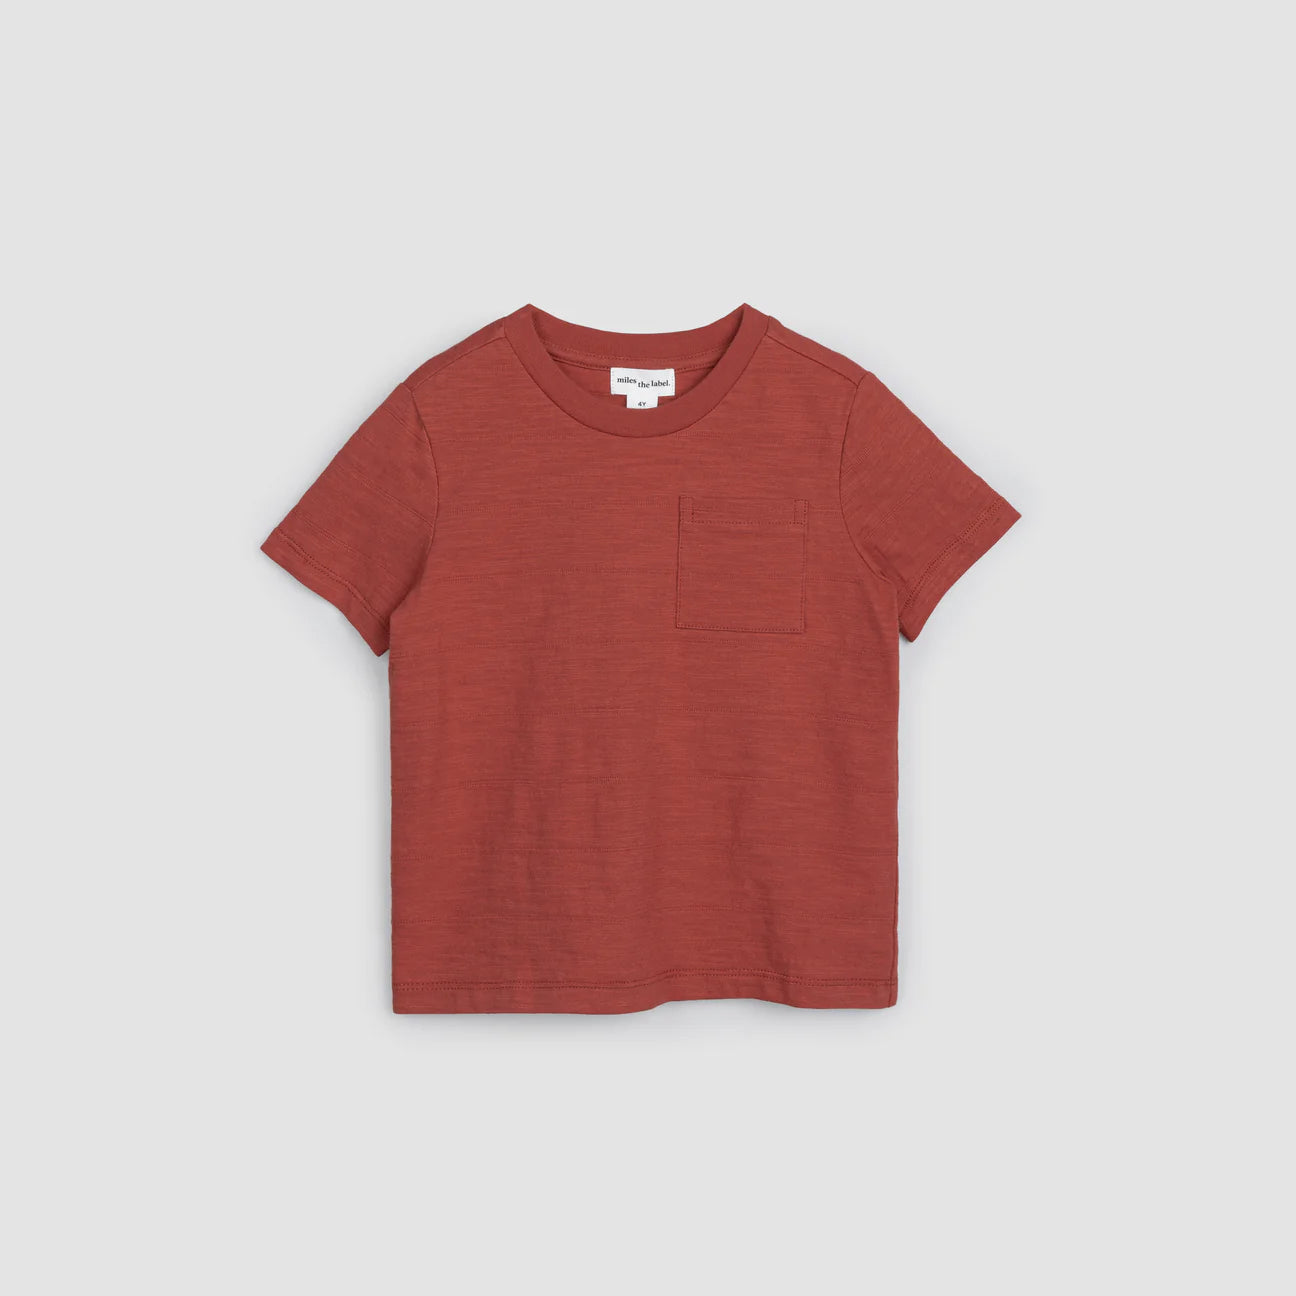 Brick Textured Slub Jersey Pocket Children's T-Shirt